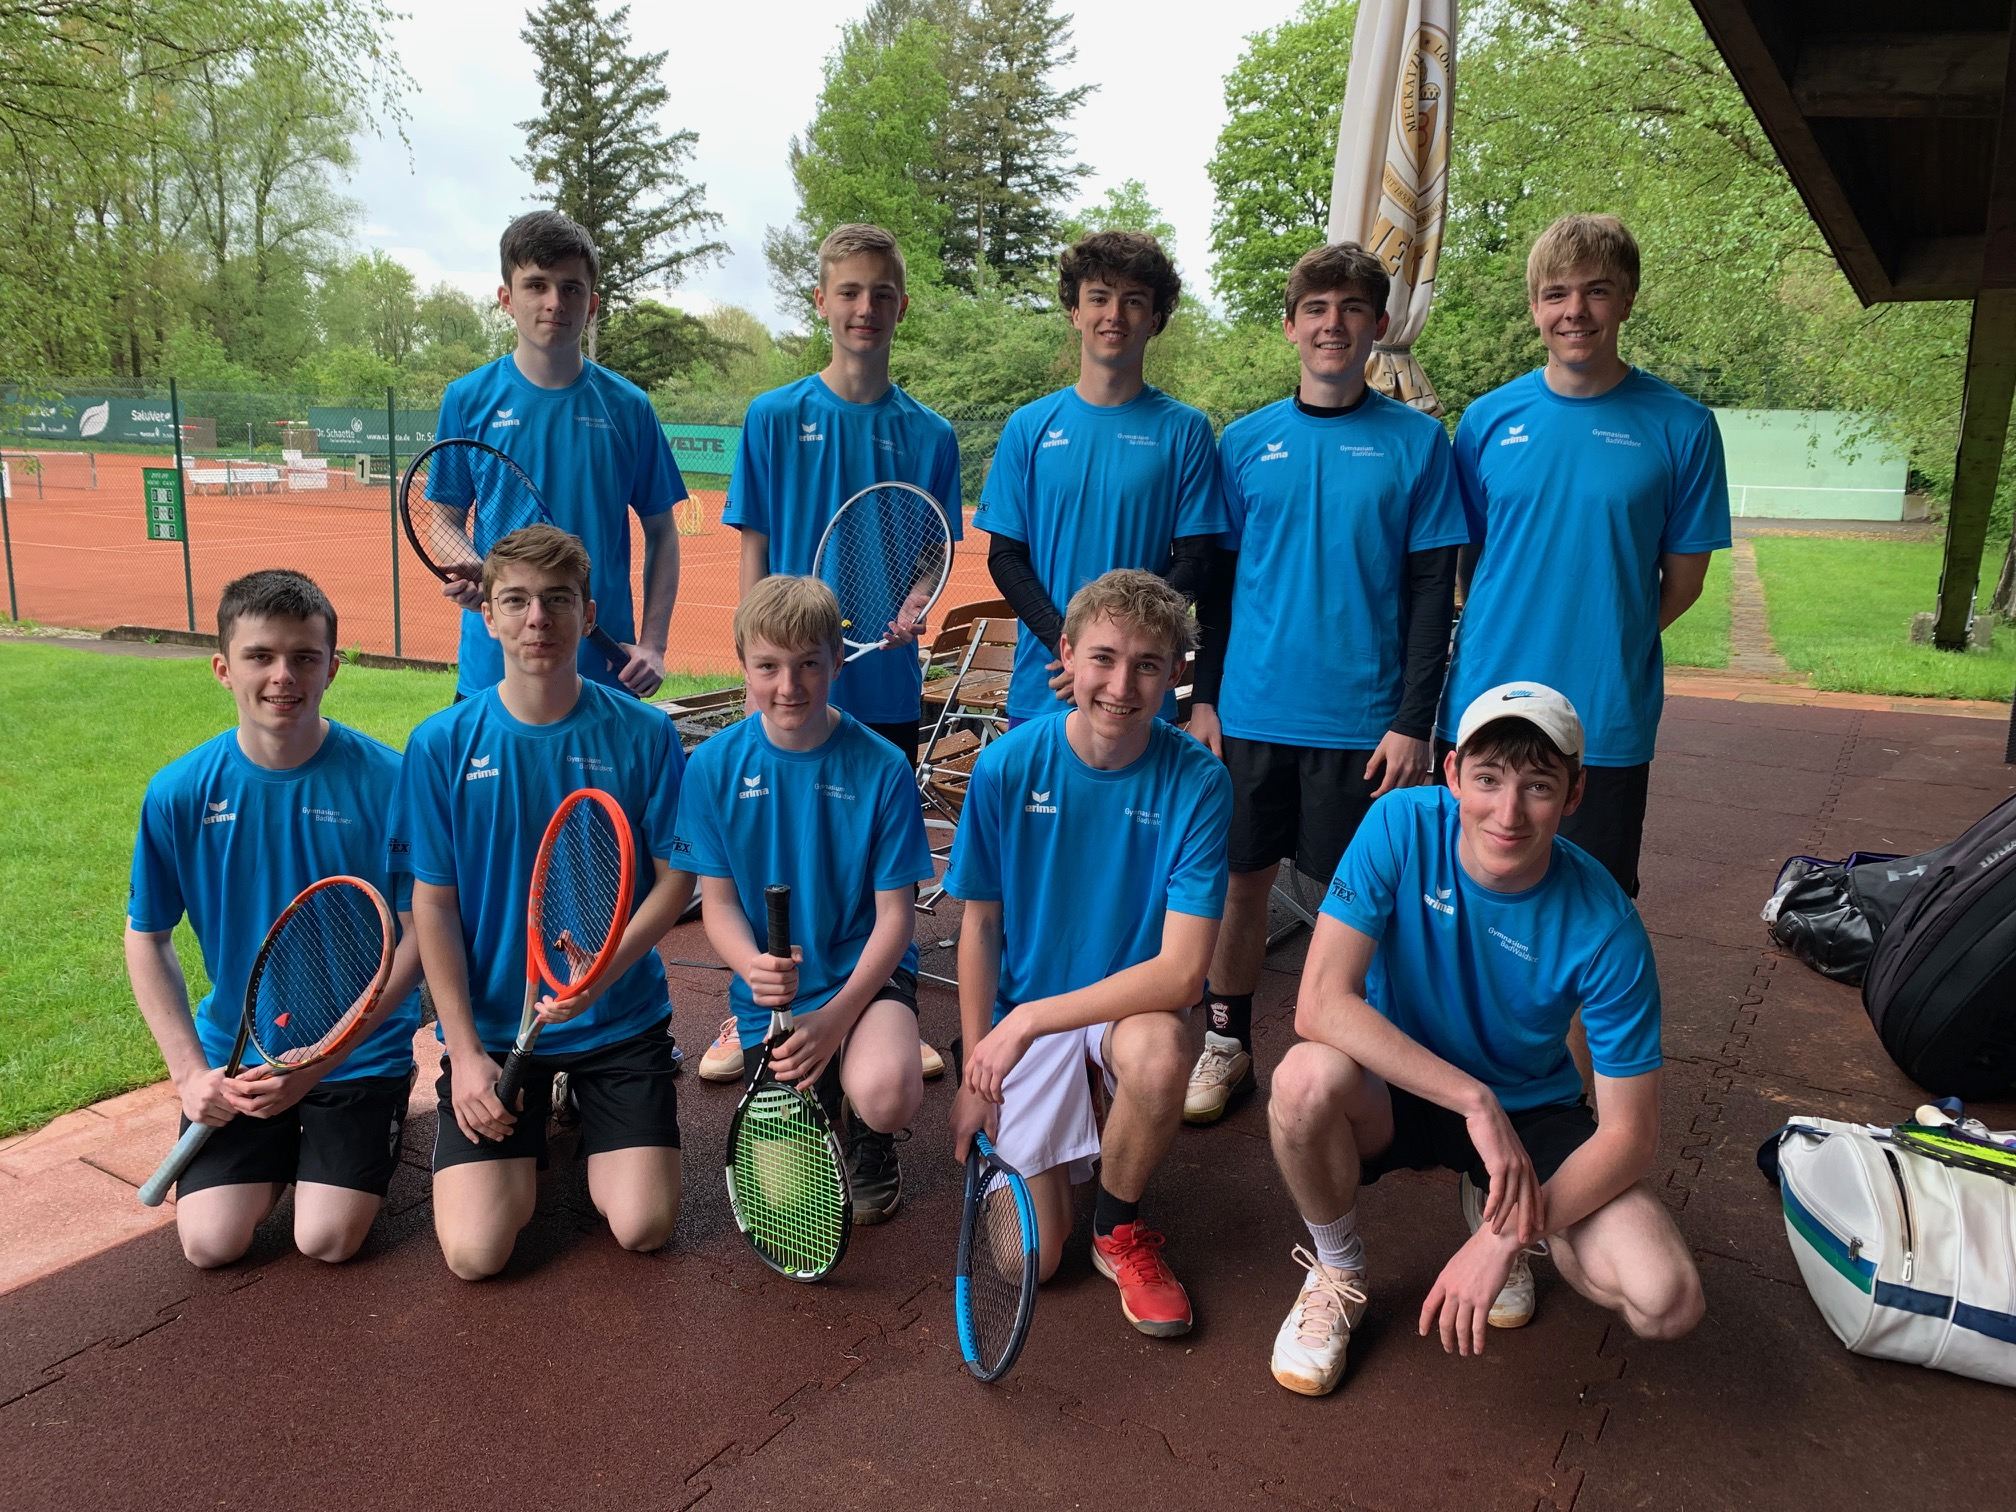 Jugend trainiert für Olympia - Tennis:  Jungs des Gymnasiums starten mit Teamgeist und Fairness in die Runde